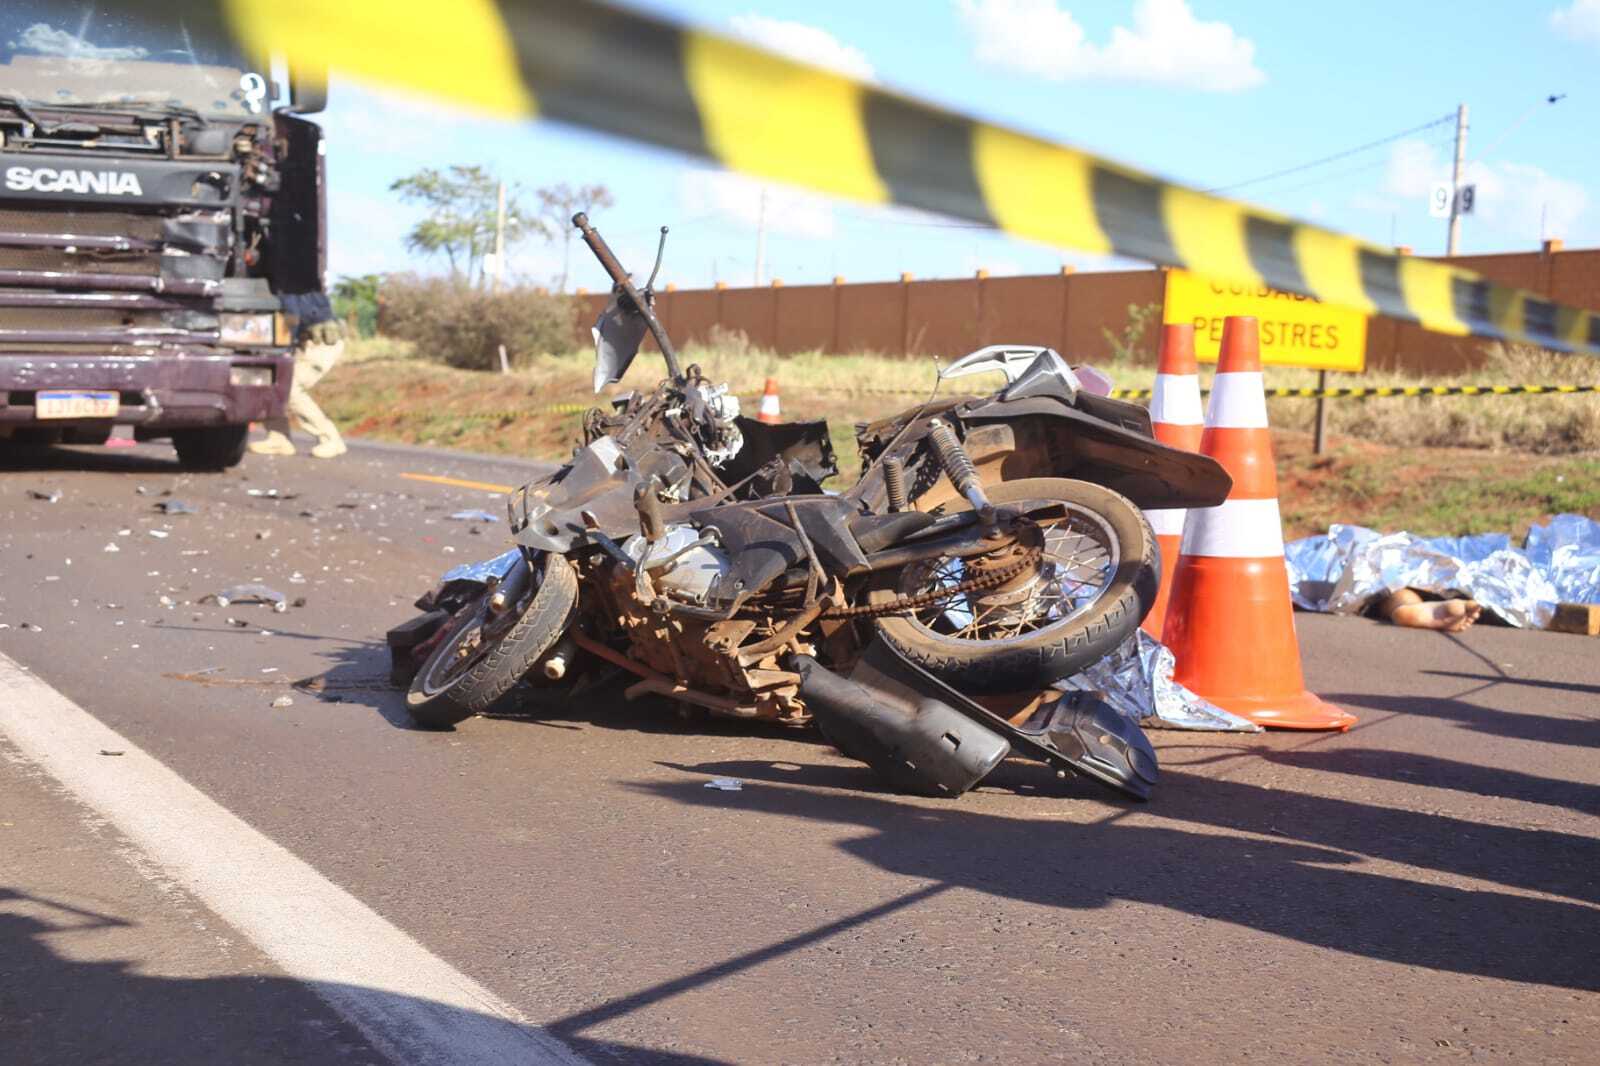 Morre segundo piloto vítima de acidente em corrida de motos em